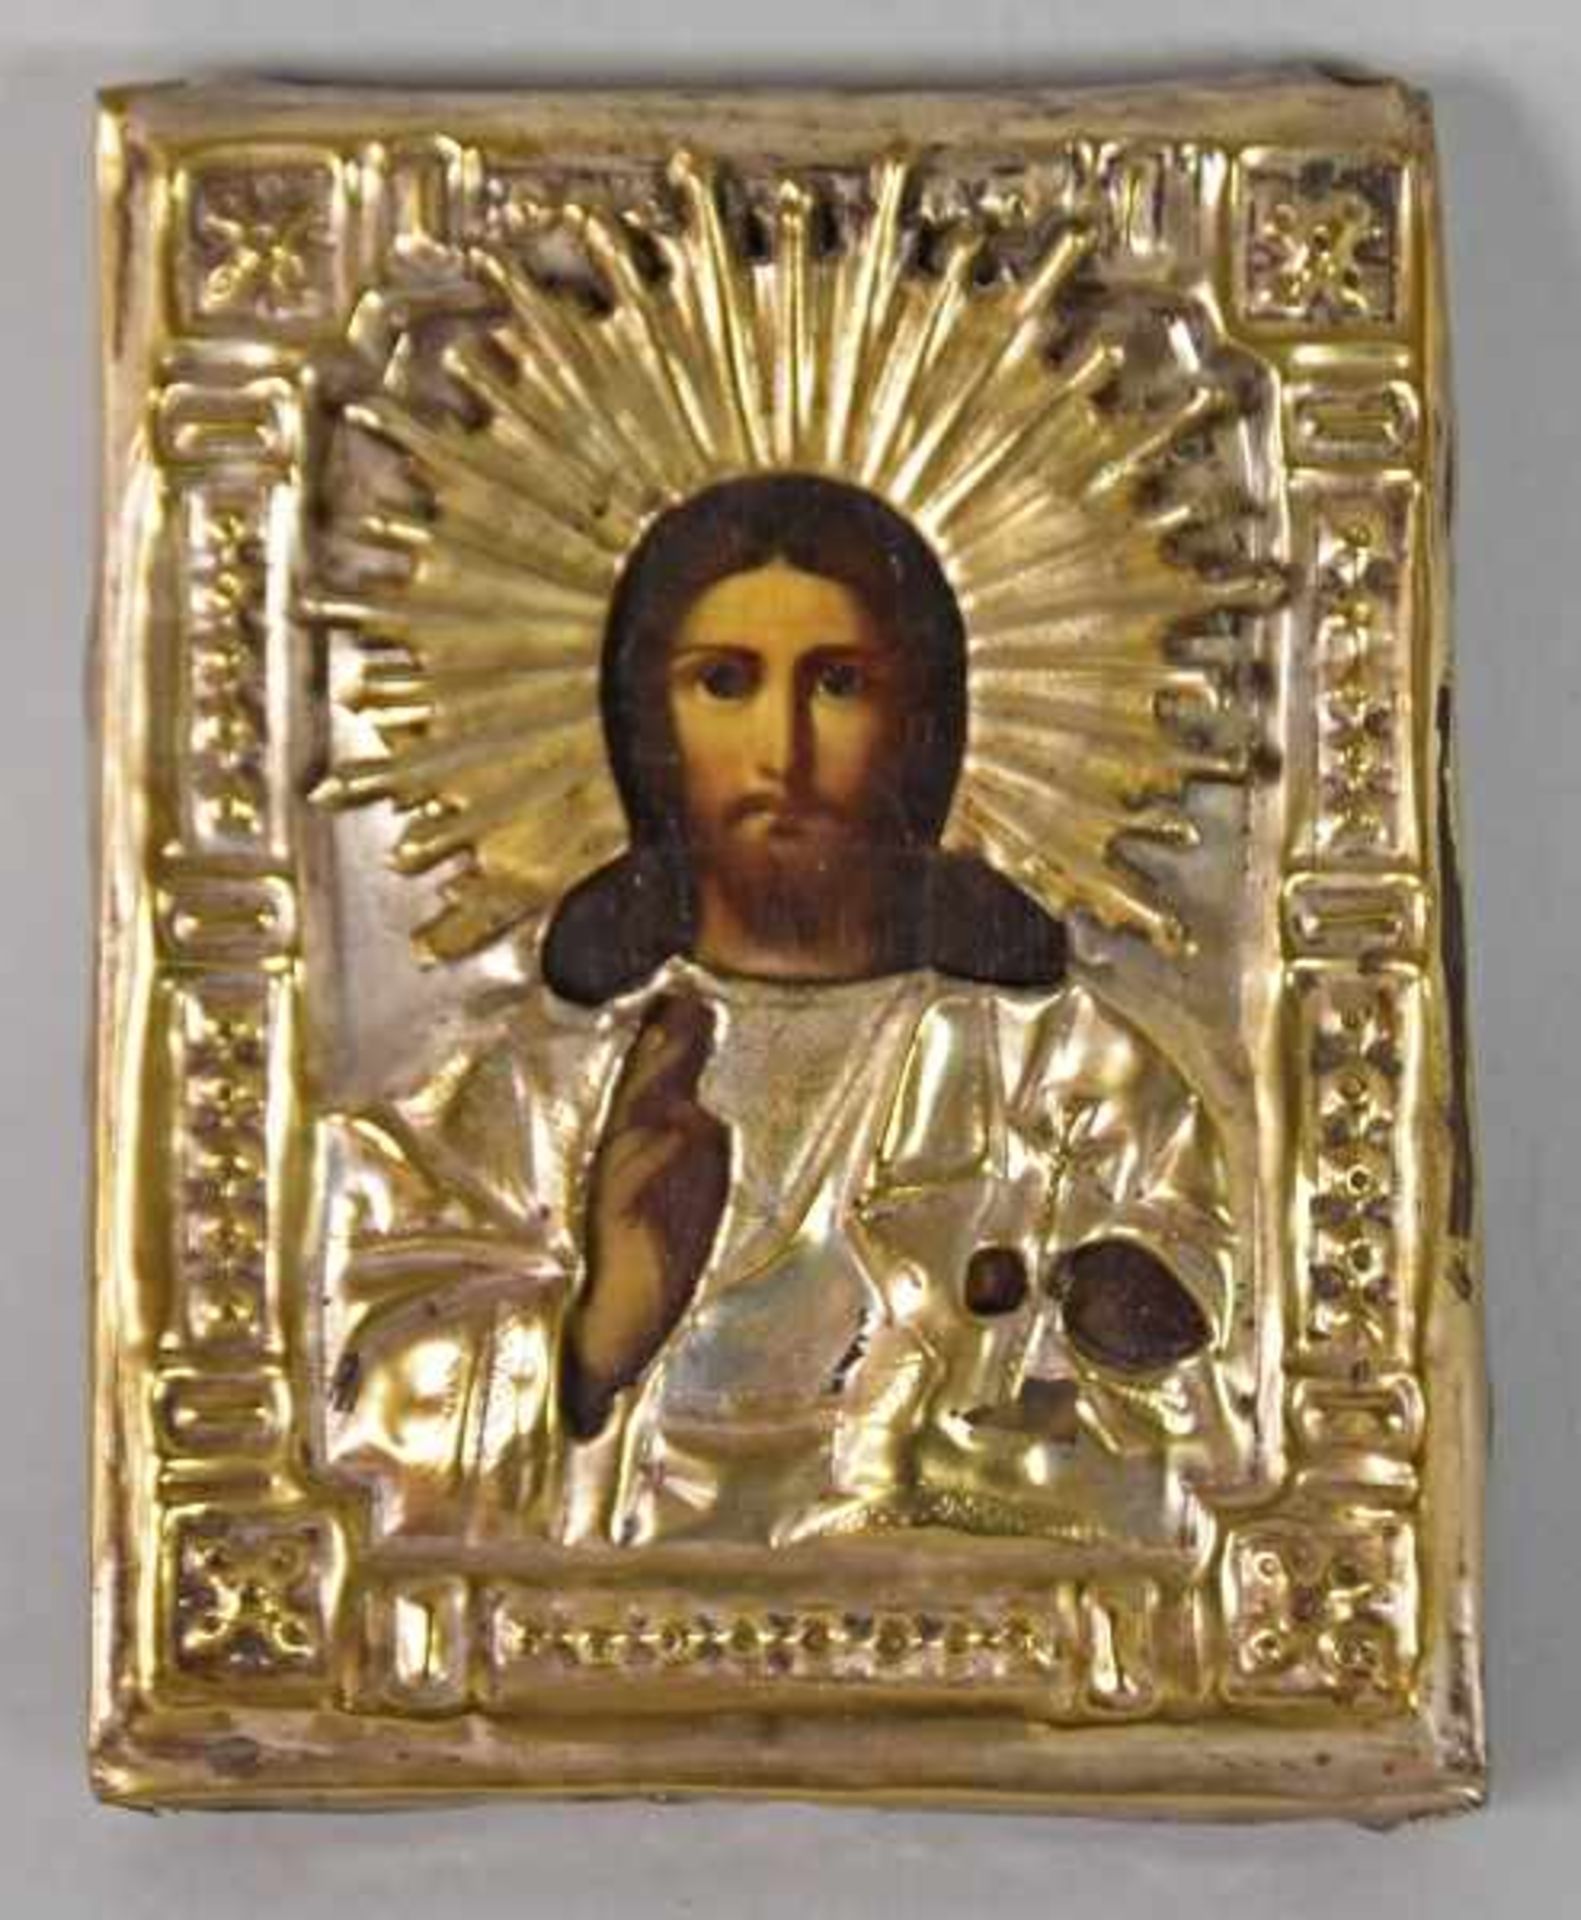 IKONE Christus, Ölgemälde auf Leinwand, aufgezogen auf Holz, Messing-Oklad mit applizierten Teilen - Bild 2 aus 3